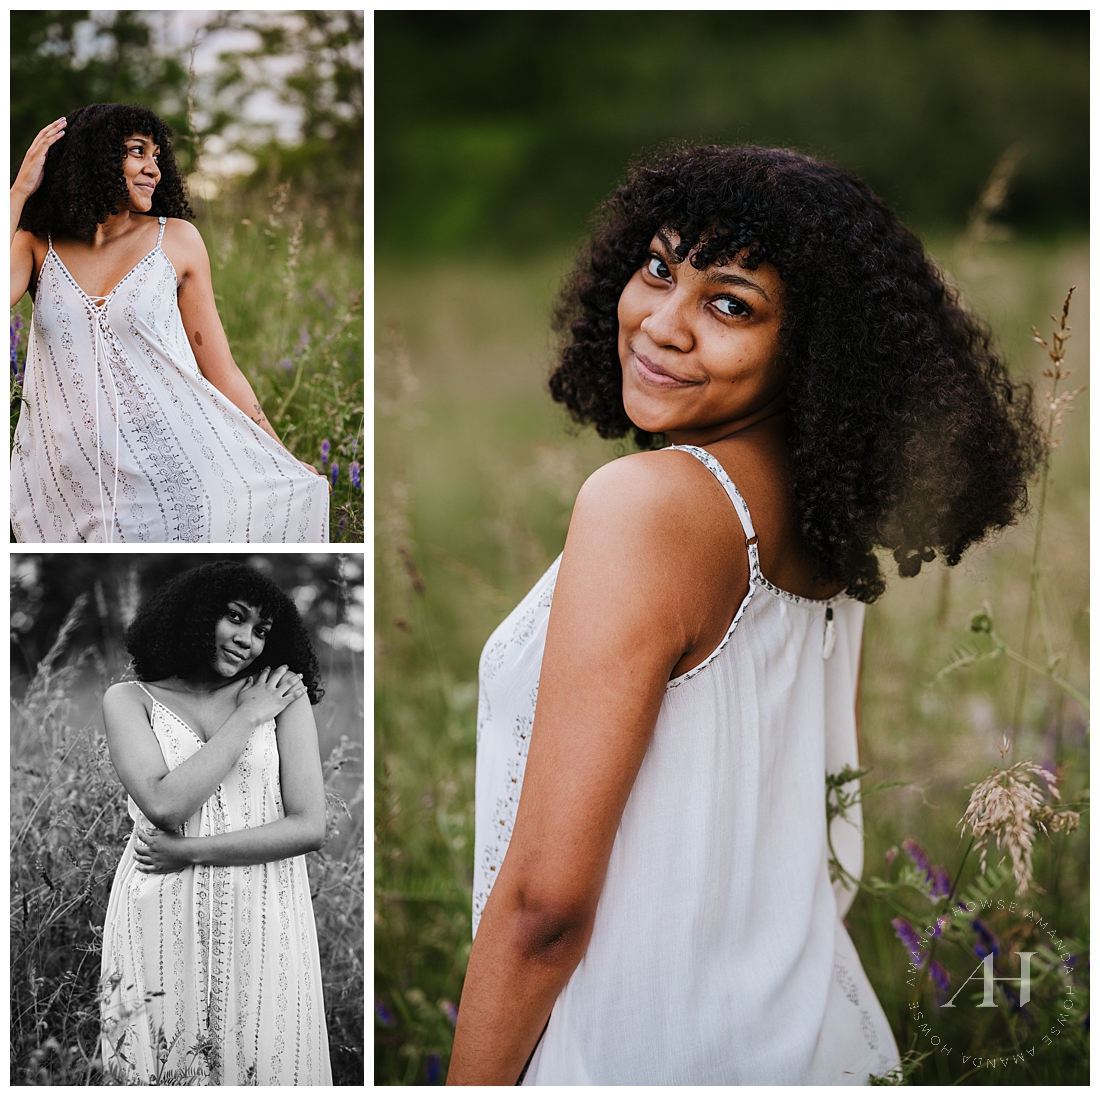 PNW Models | Goddess Photoshoot with White Dresses | Photographed by the Best Tacoma, Washington Senior Photographer Amanda Howse Photography